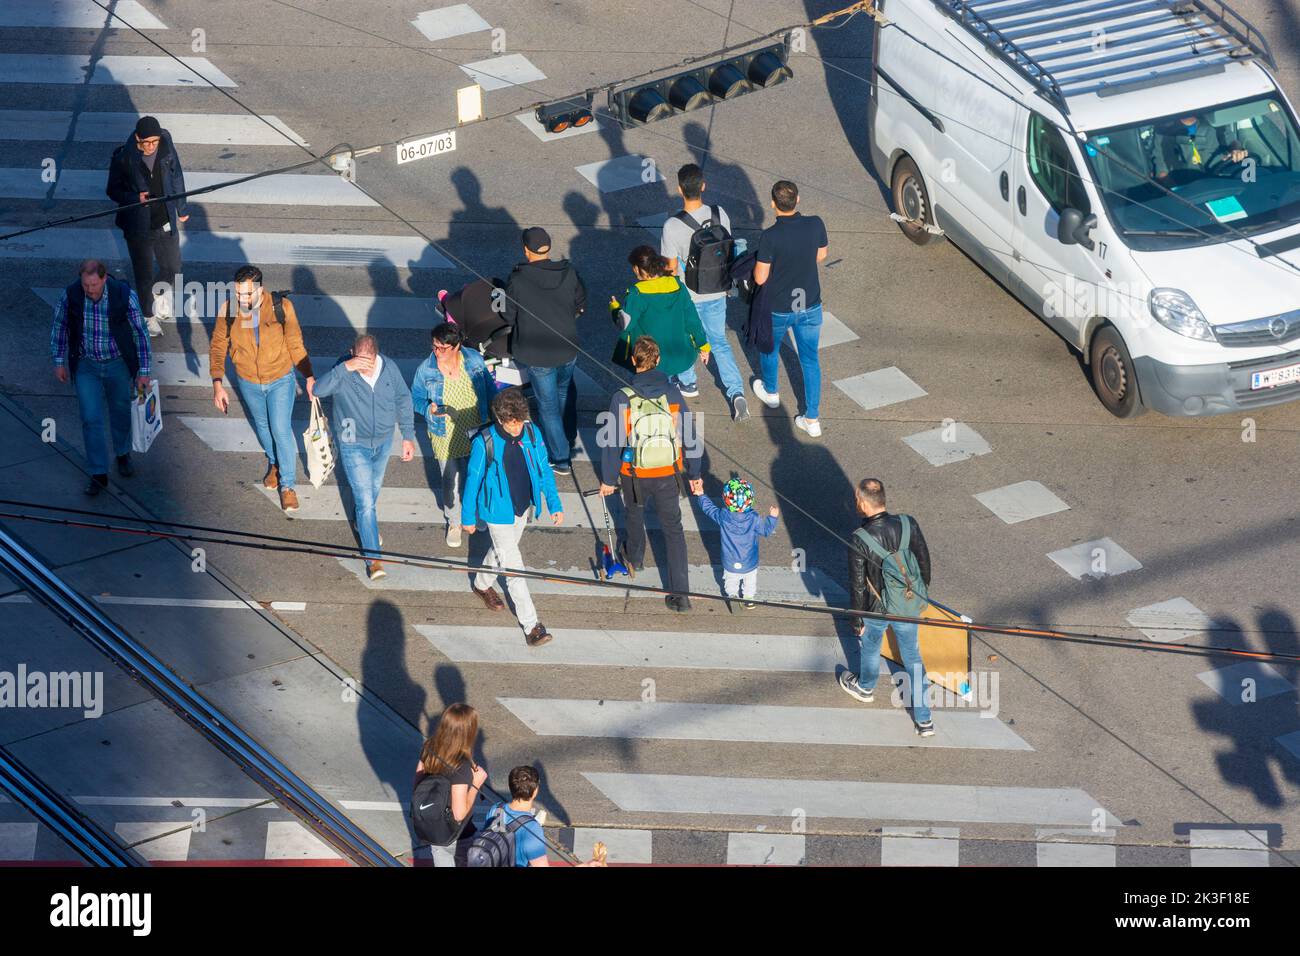 Wien, Vienna: pedestrians on crosswalk of crossroad, car in 15. Rudolfsheim-Fünfhaus, Wien, Austria Stock Photo